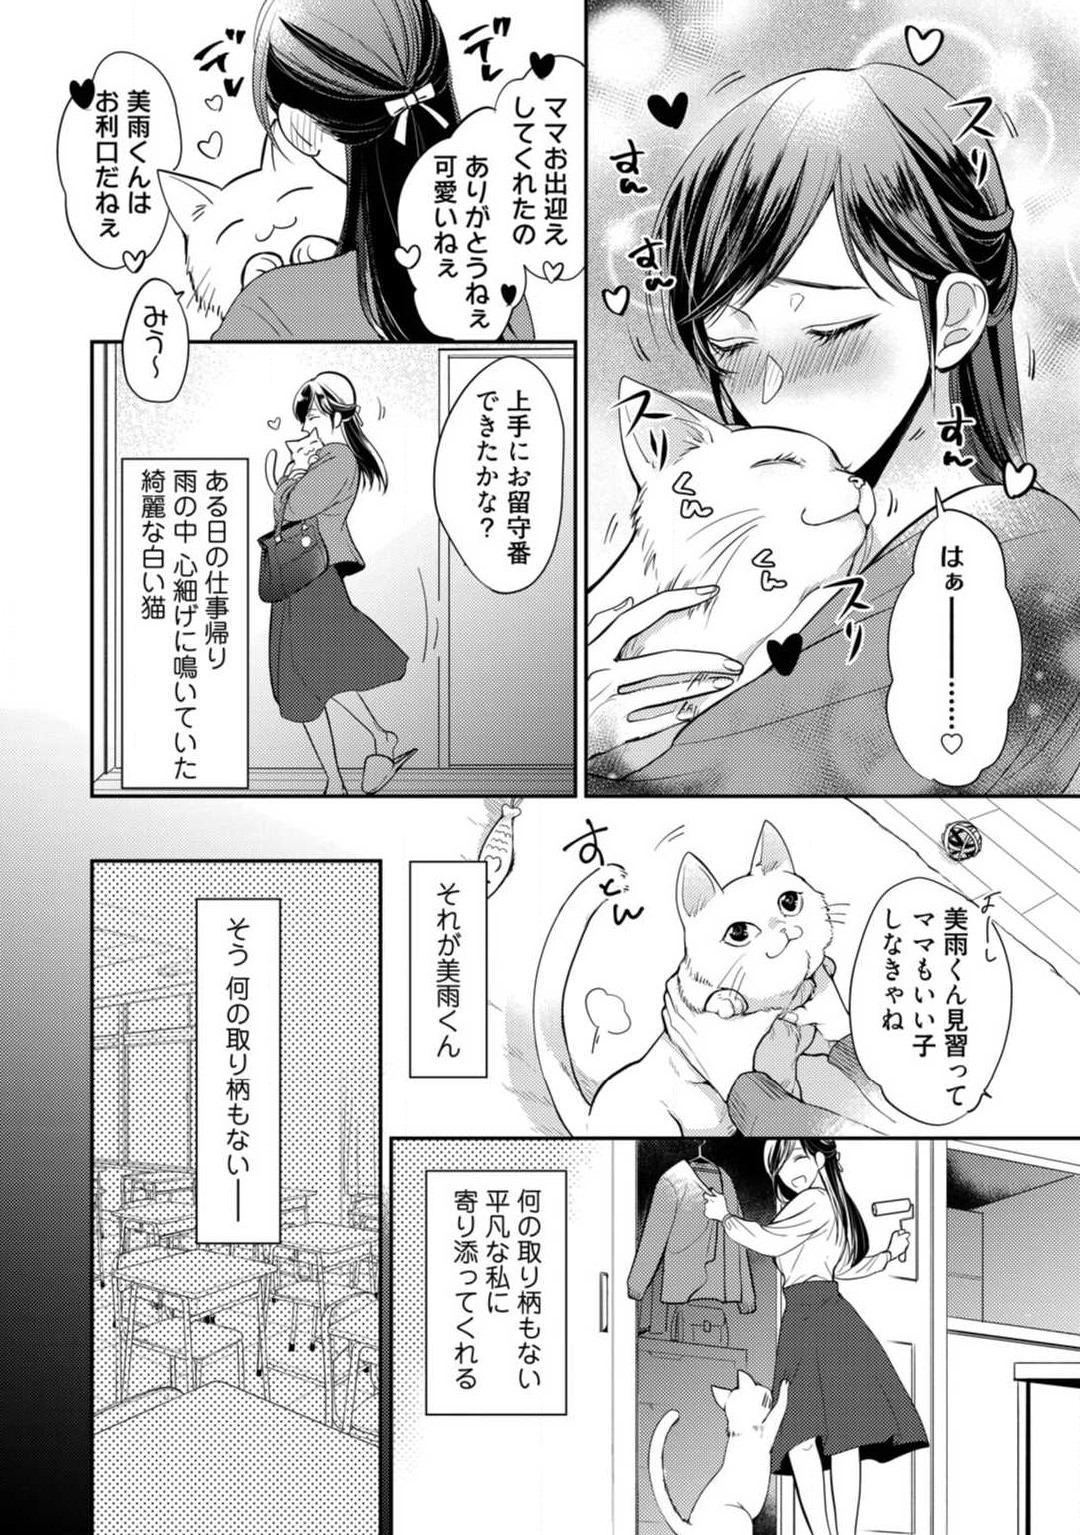 Wives [Yoshimi Kiyo] Ai no Kaikata Amaekata ~Shironeko Kareshi wa Watashi no Mune ga Okiniiri~ 1-3 Threesome - Page 5